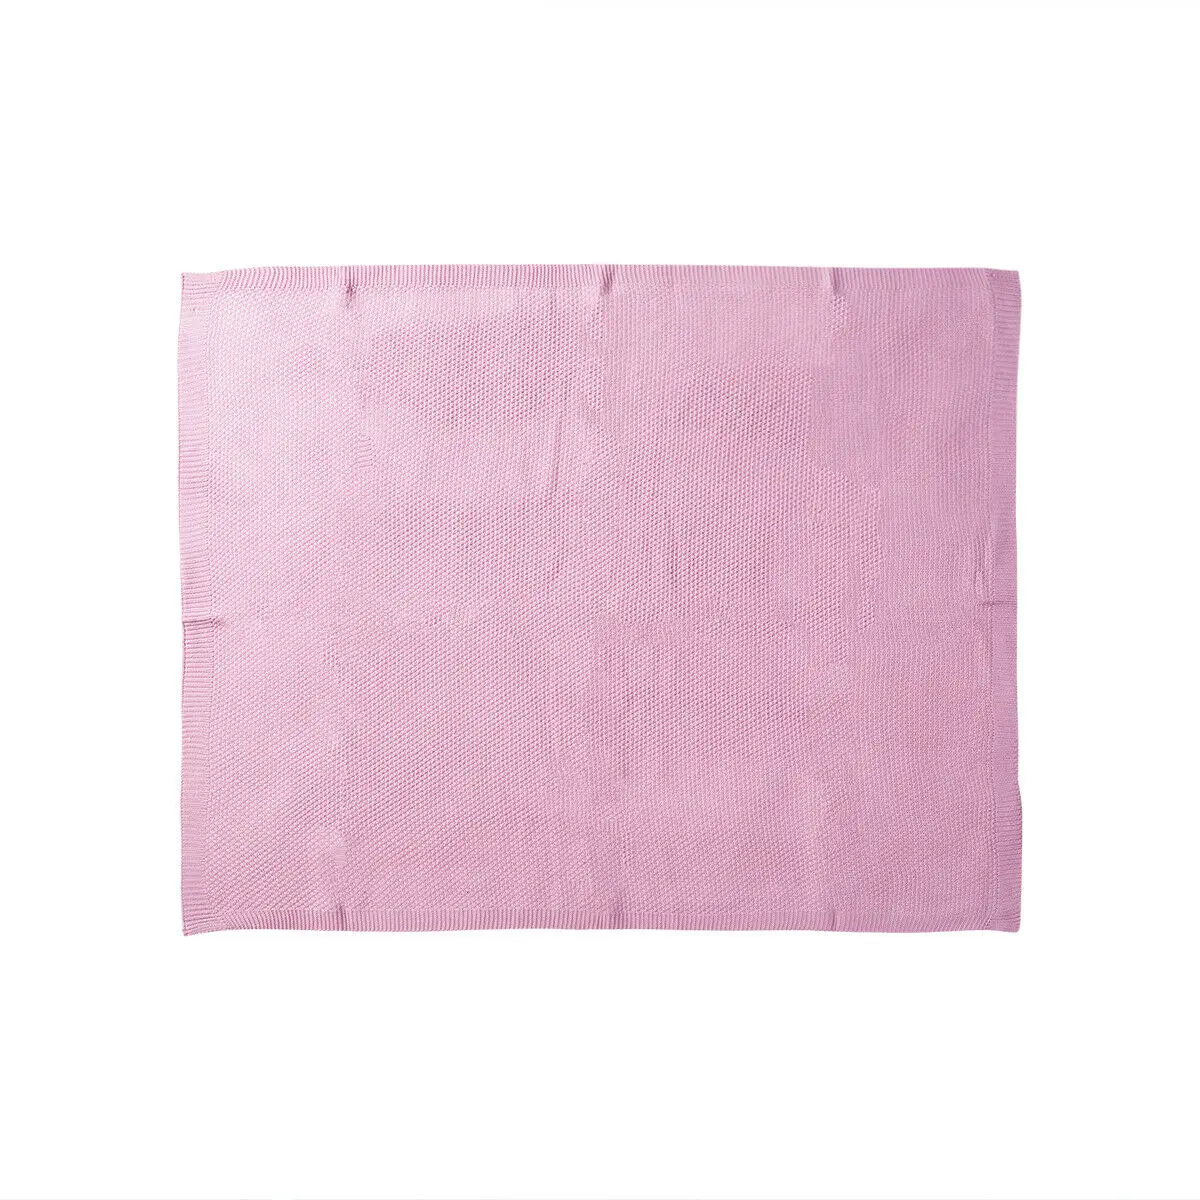 Зимнее теплое детское вязаное одеяло s одеяло для новорожденного, вязаное, для новорожденных, для пеленания, мягкое одеяло для малышей - Цвет: Розовый